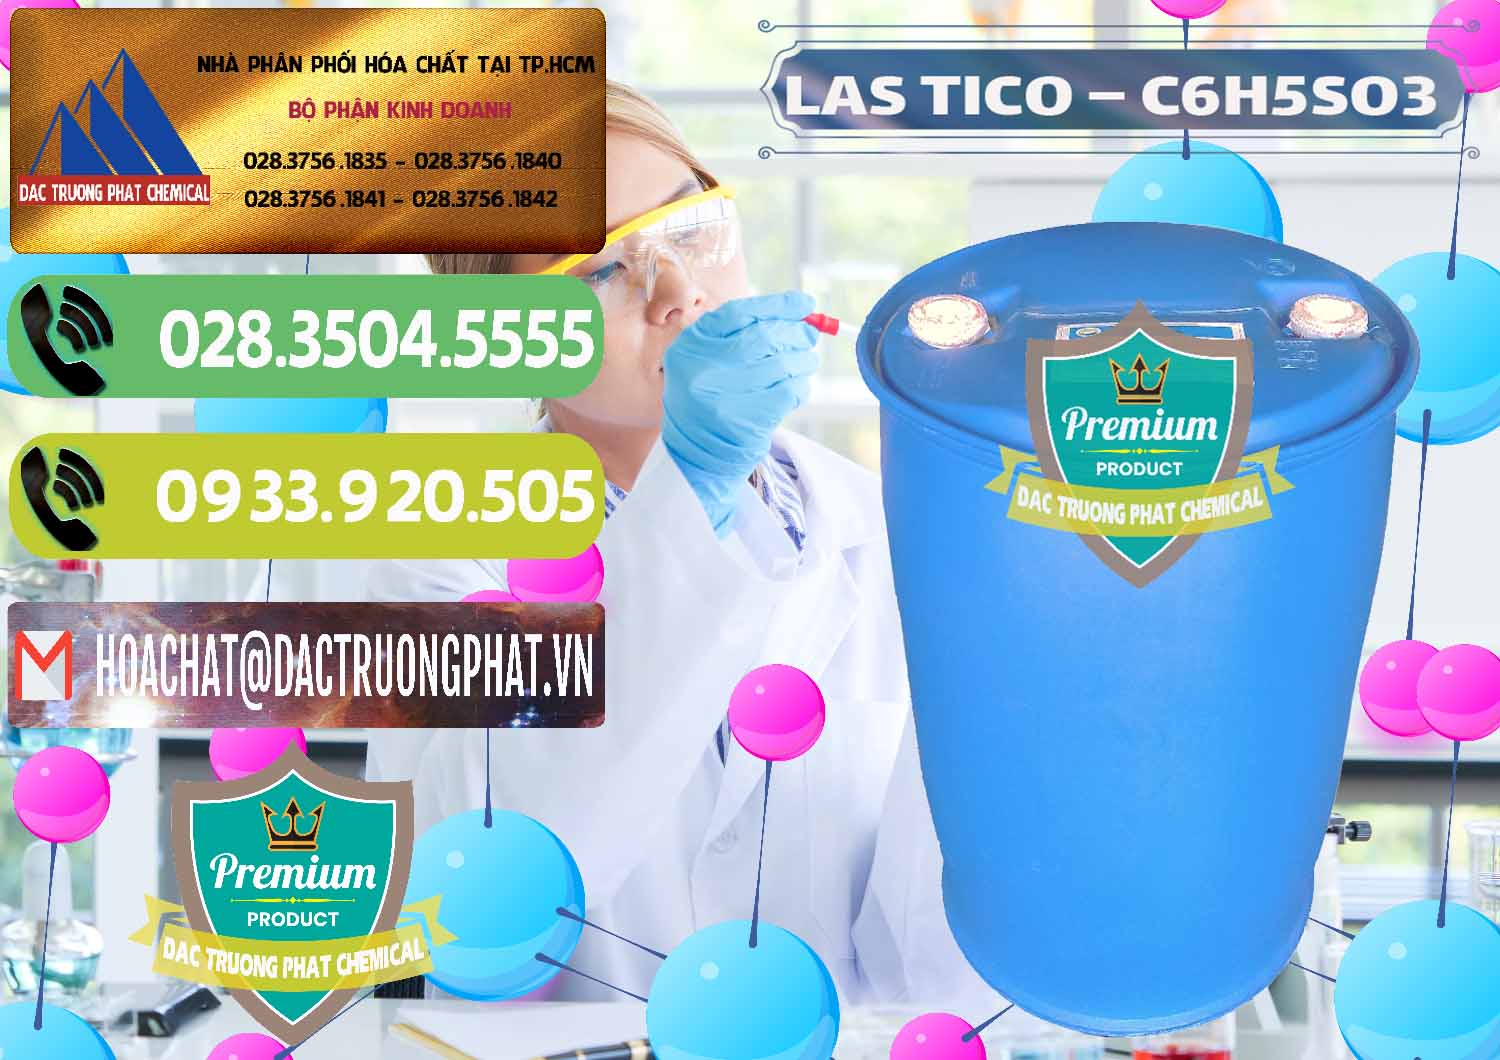 Cty phân phối & cung cấp Chất tạo bọt Las H Tico Việt Nam - 0190 - Công ty chuyên cung cấp ( bán ) hóa chất tại TP.HCM - hoachatmientay.vn